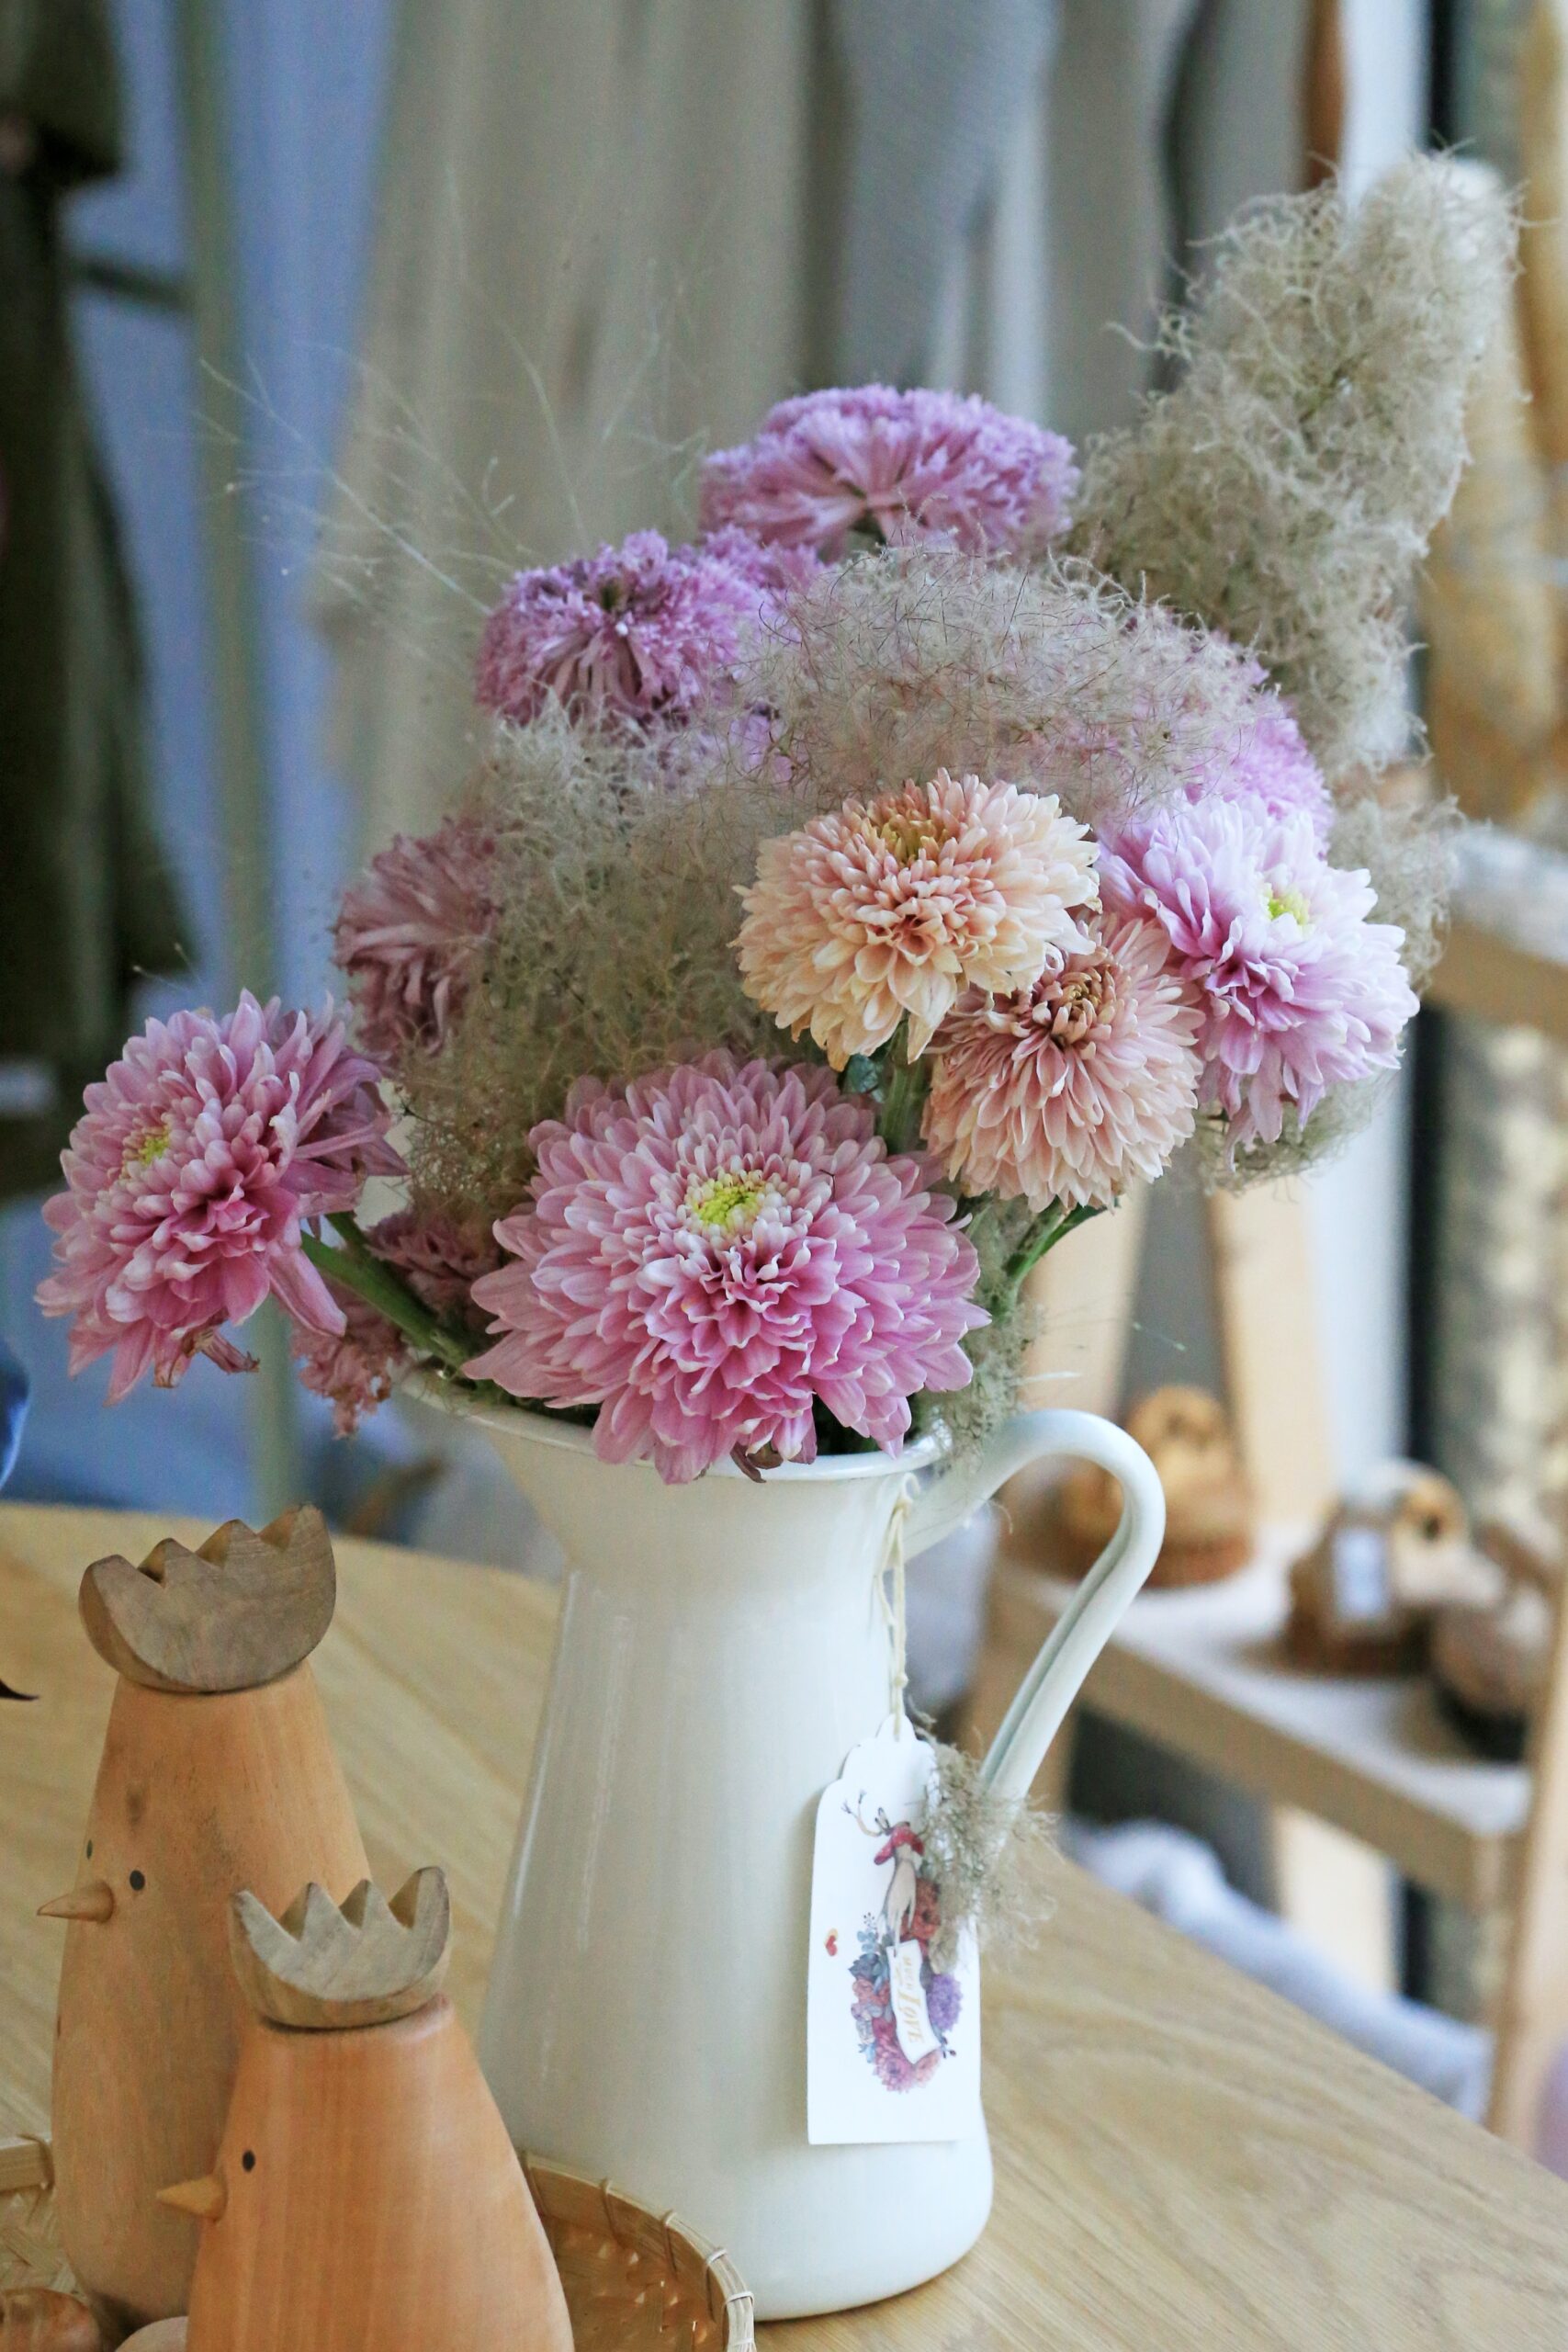 Flowers in vase 